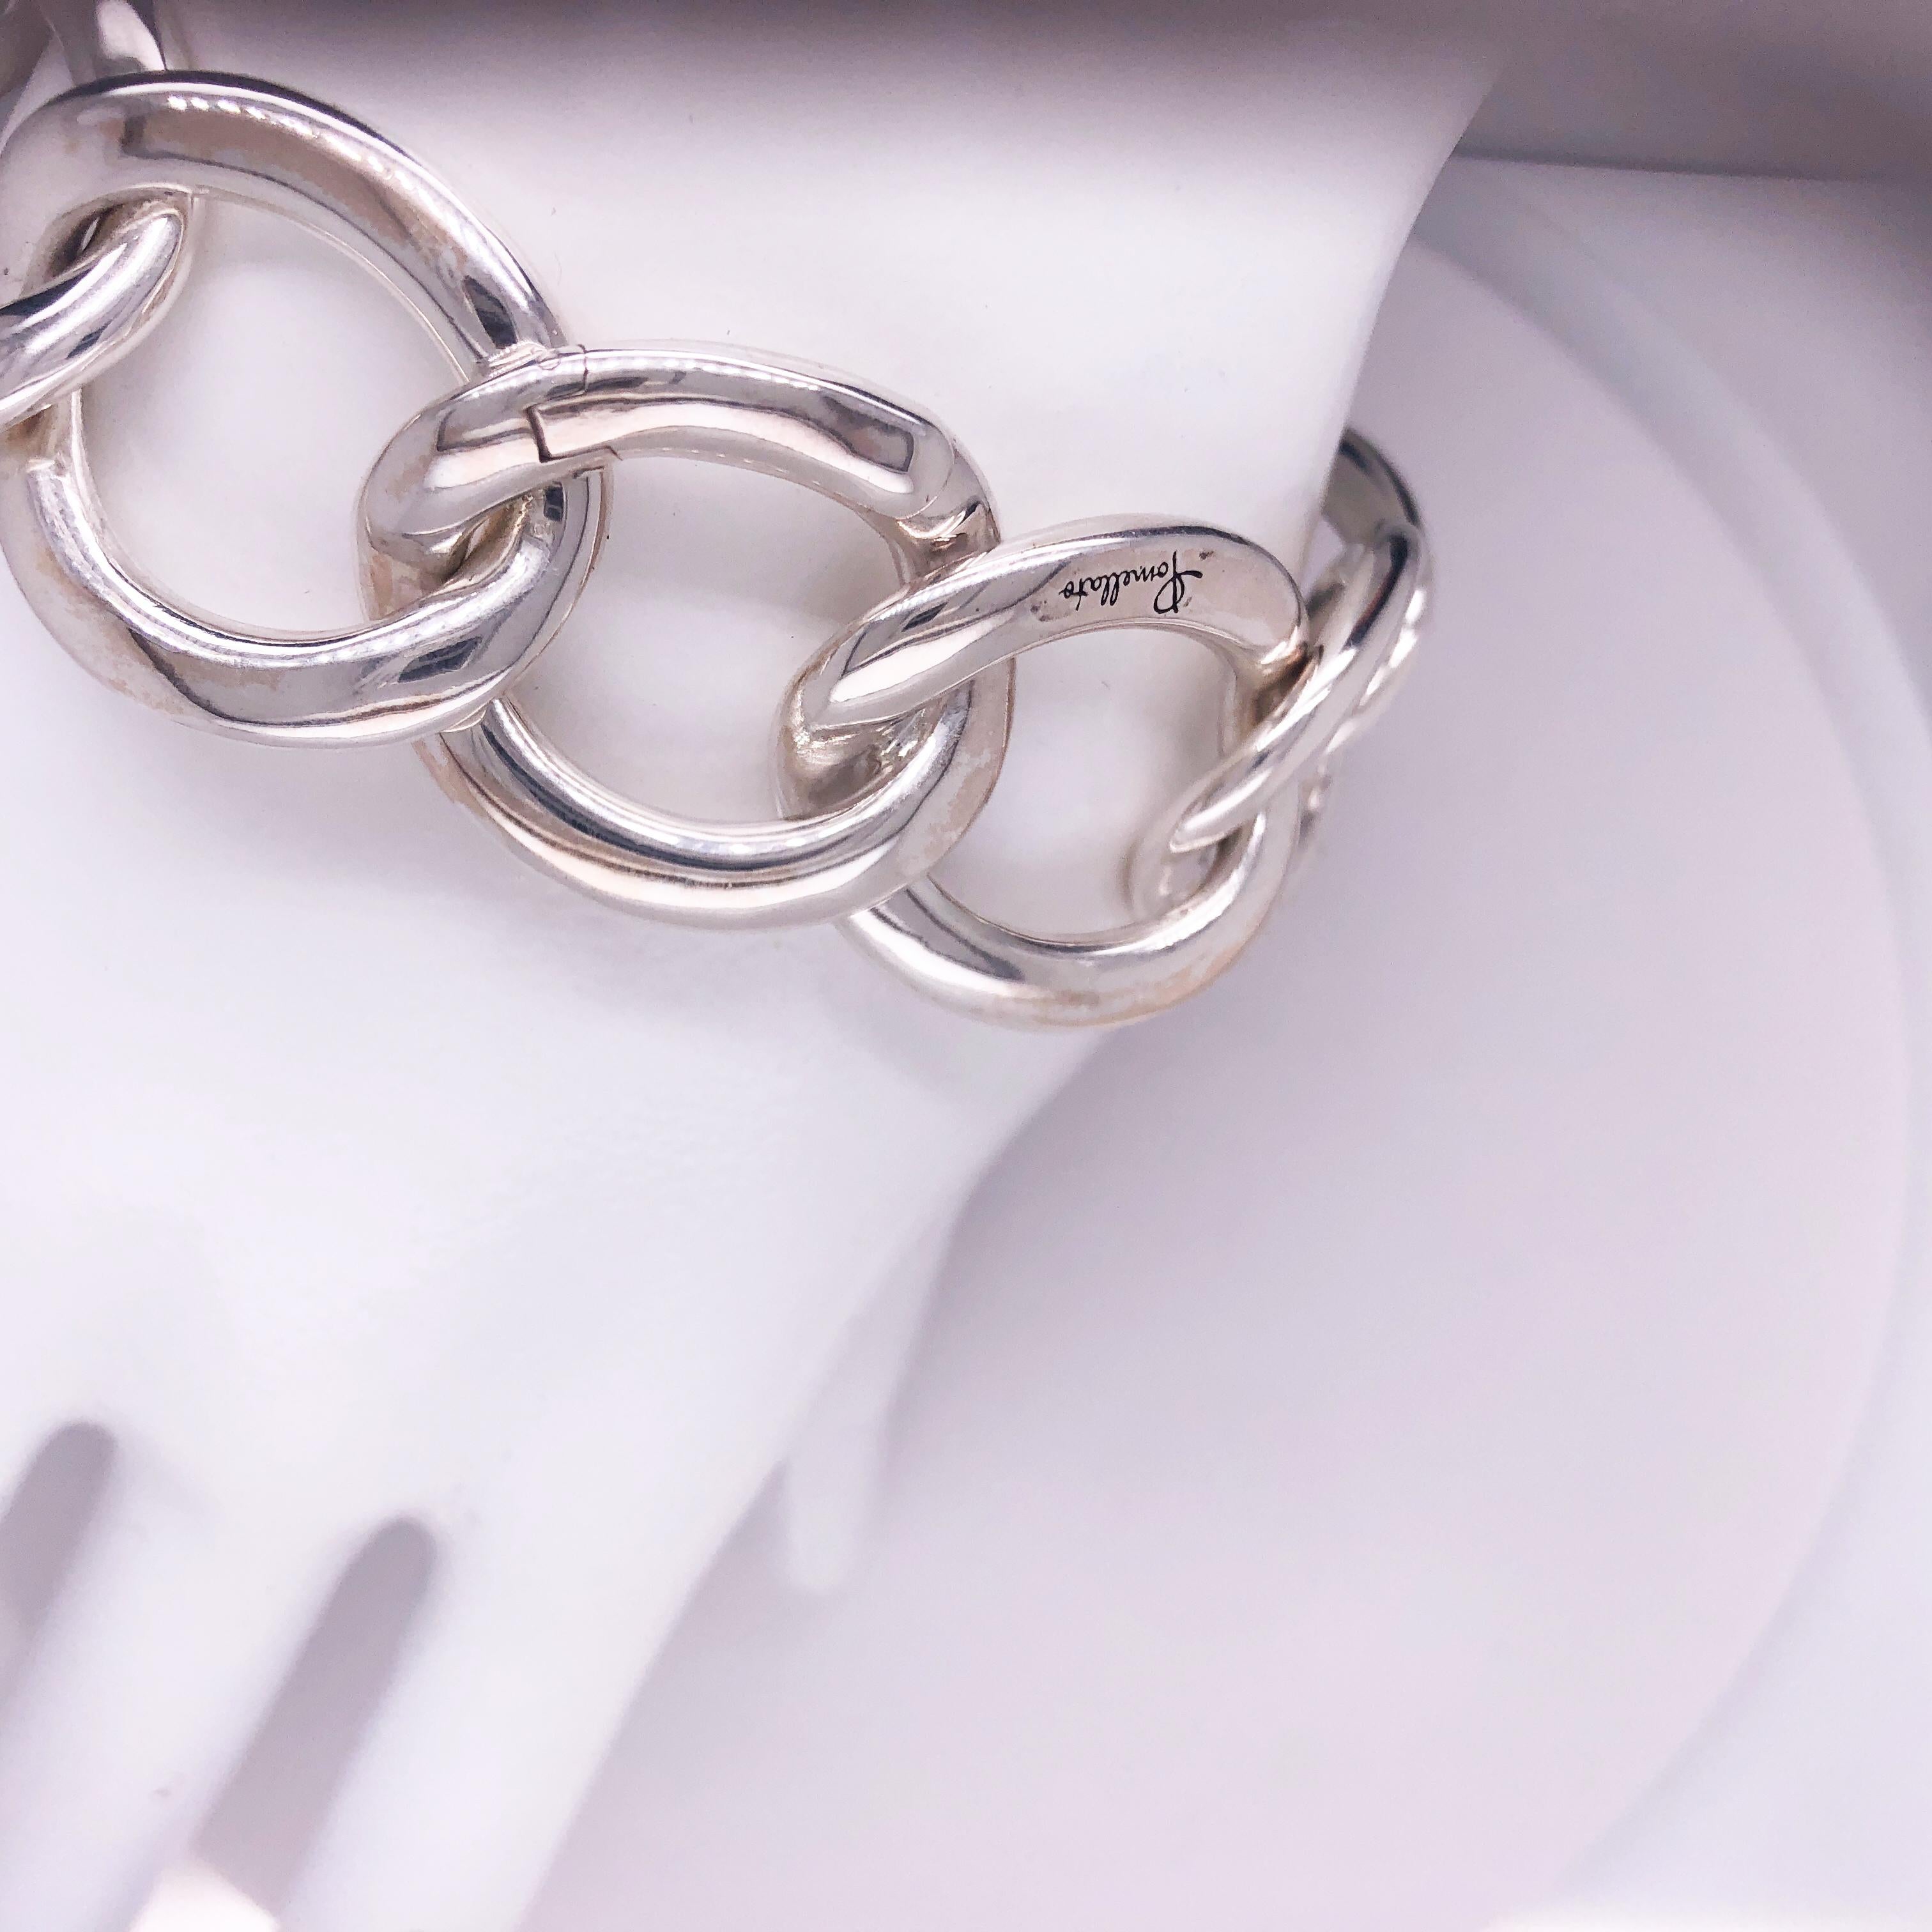 Contemporary Pomellato Solid Sterling Silver Gourmette Bracelet, circa 2010